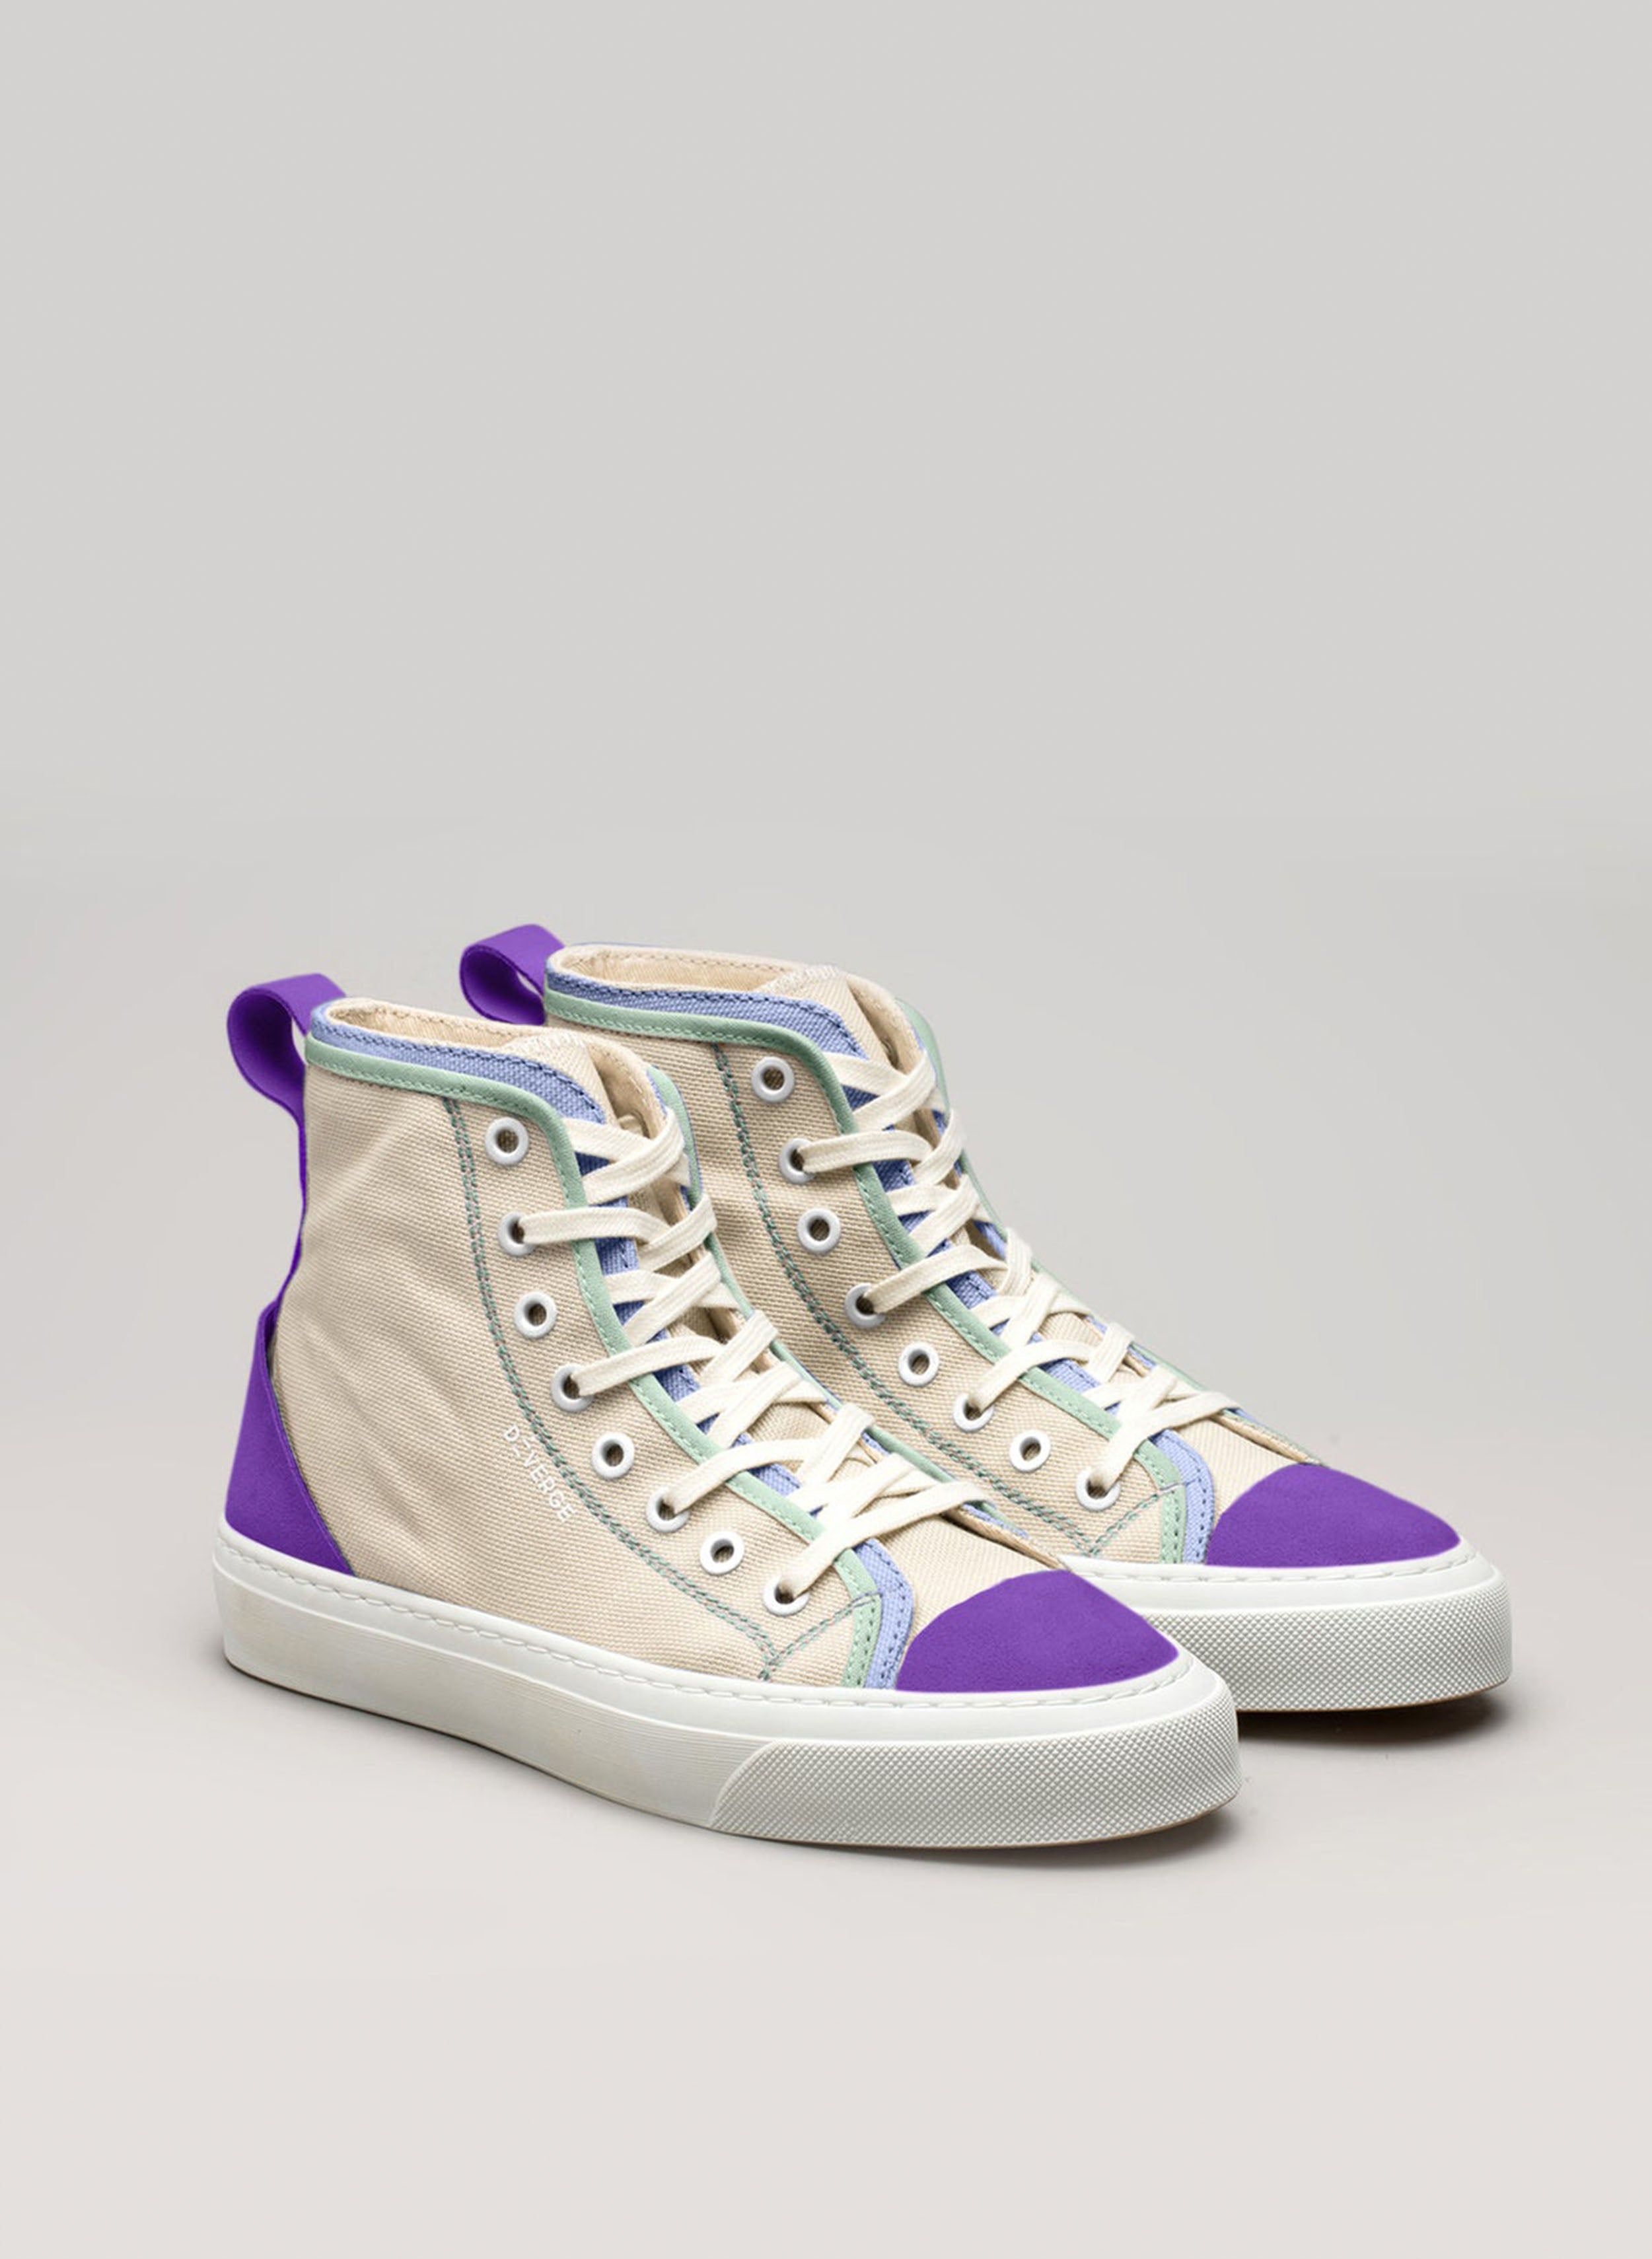 Un paio di scarpe alte personalizzate sneakers di Diverge che promuovono l'impatto sociale attraverso il progetto imagine.